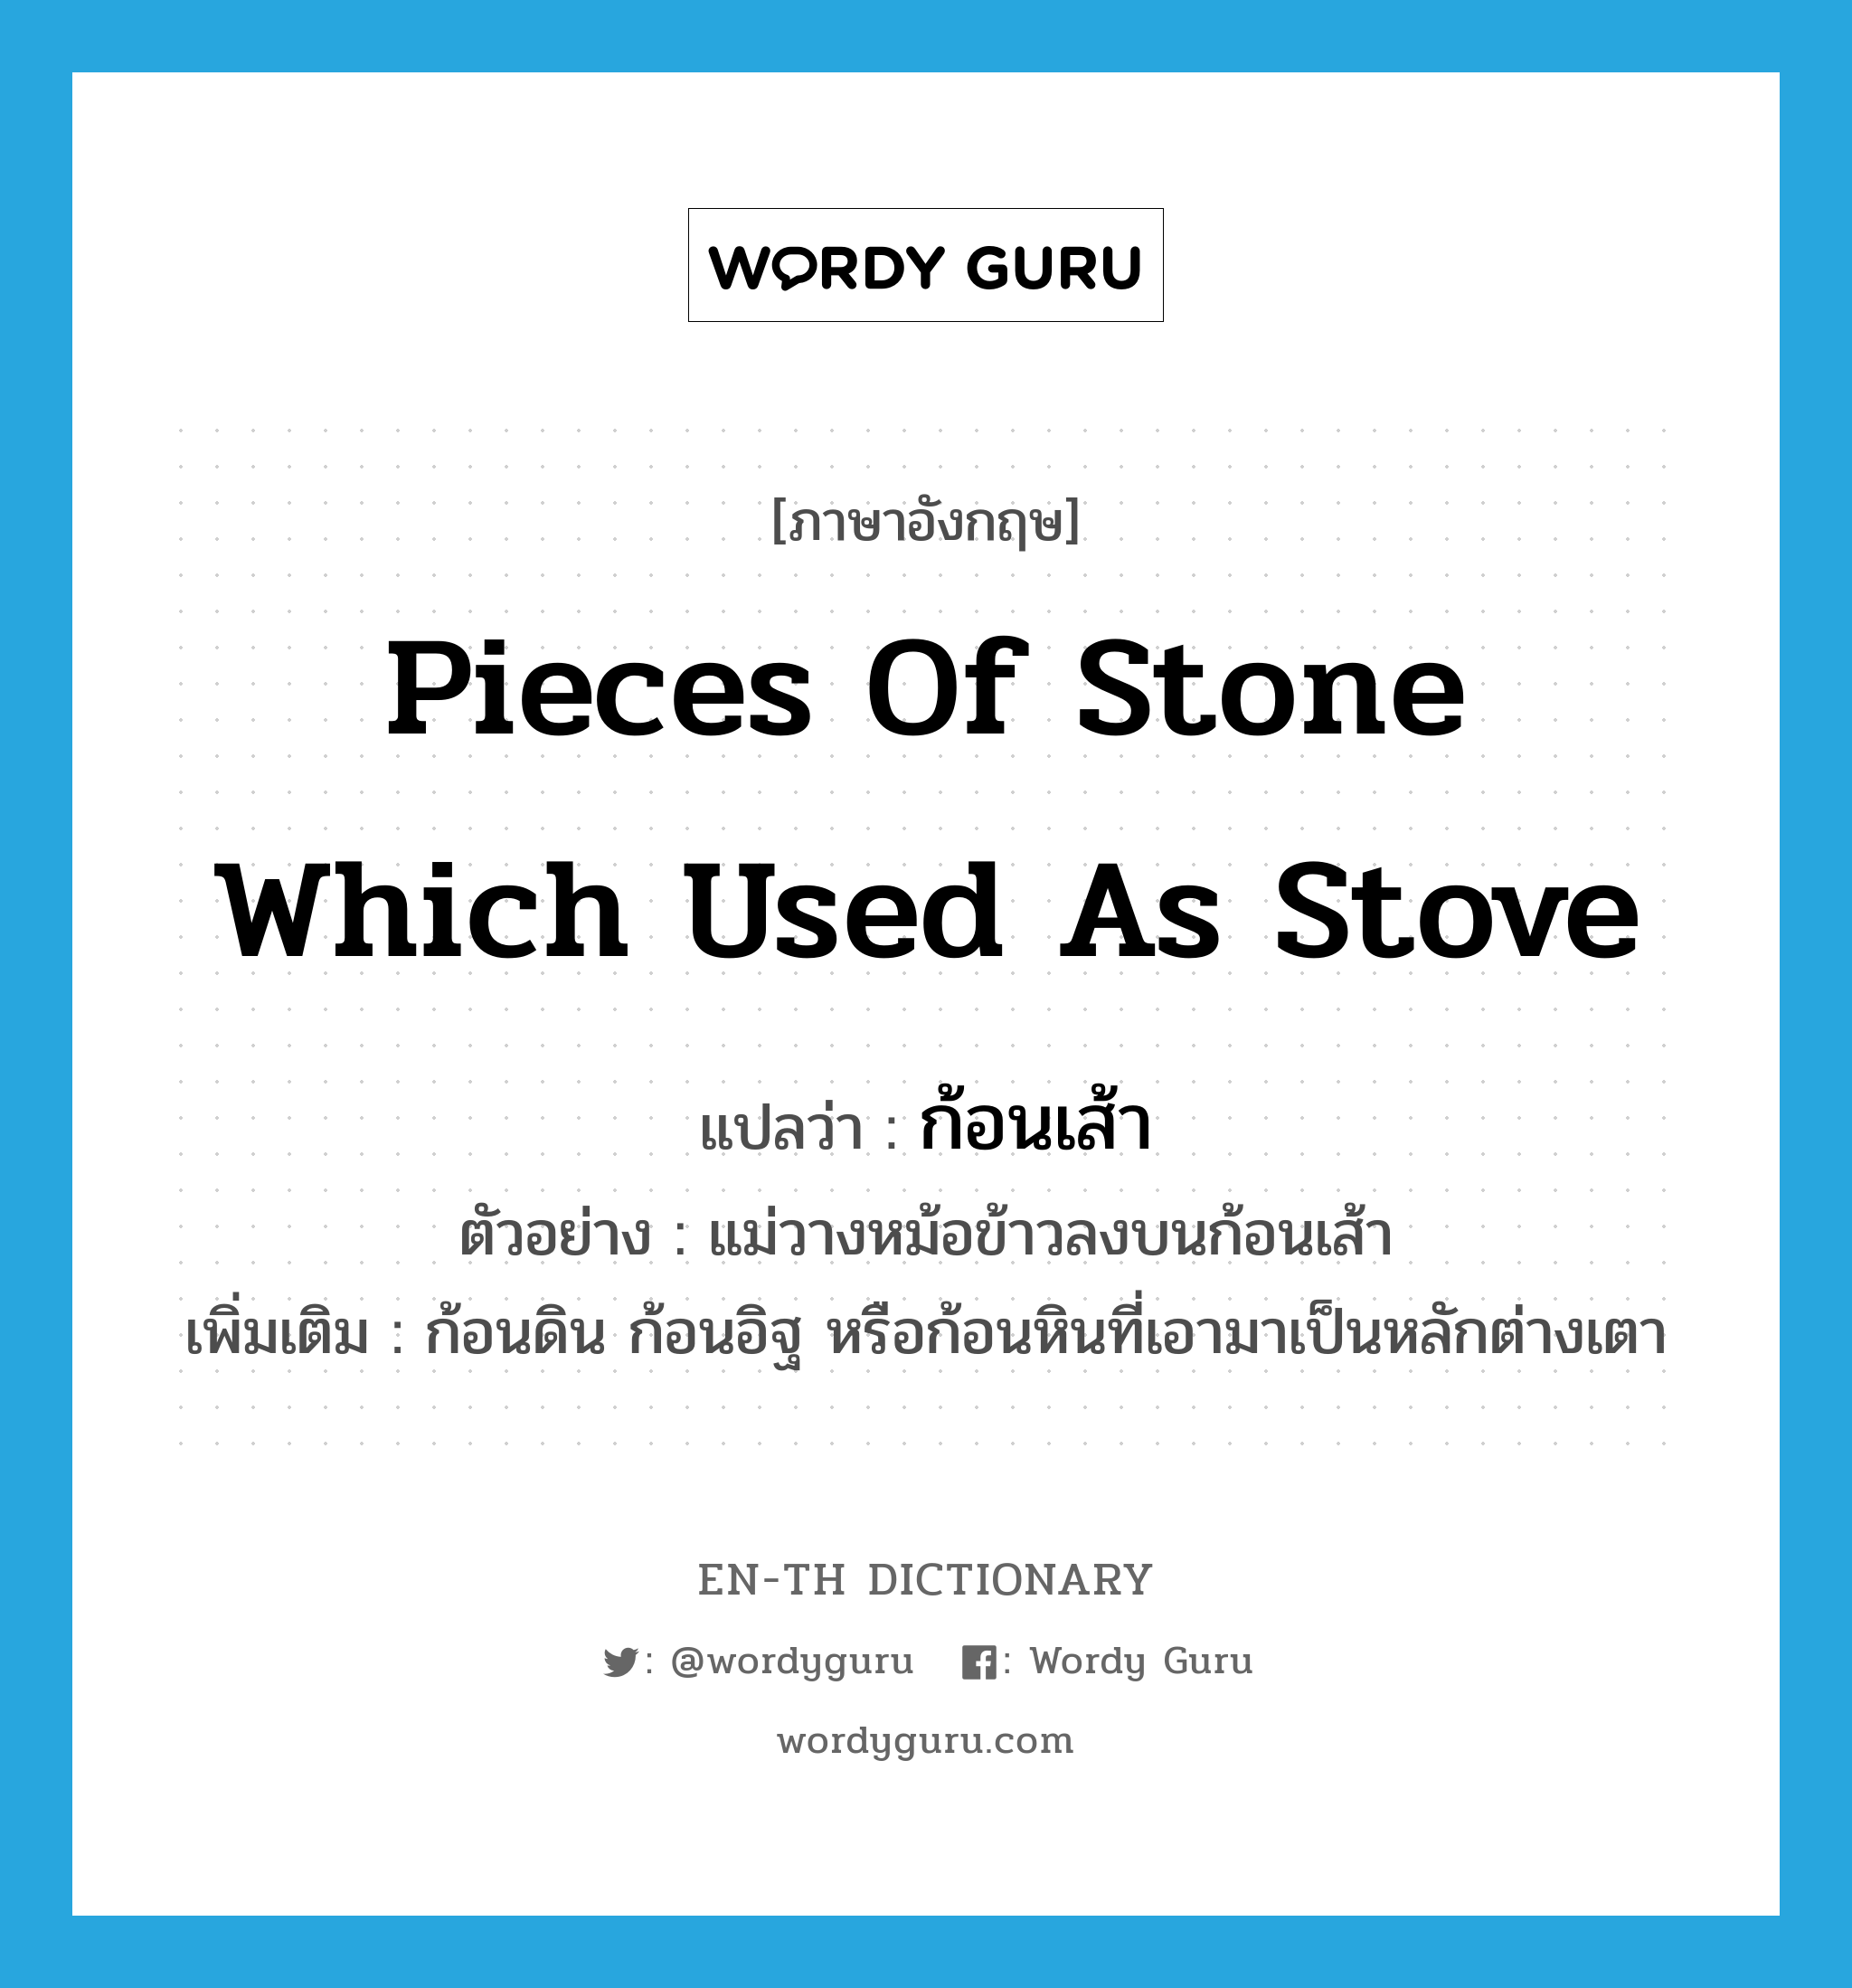 ก้อนเส้า ภาษาอังกฤษ?, คำศัพท์ภาษาอังกฤษ ก้อนเส้า แปลว่า pieces of stone which used as stove ประเภท N ตัวอย่าง แม่วางหม้อข้าวลงบนก้อนเส้า เพิ่มเติม ก้อนดิน ก้อนอิฐ หรือก้อนหินที่เอามาเป็นหลักต่างเตา หมวด N